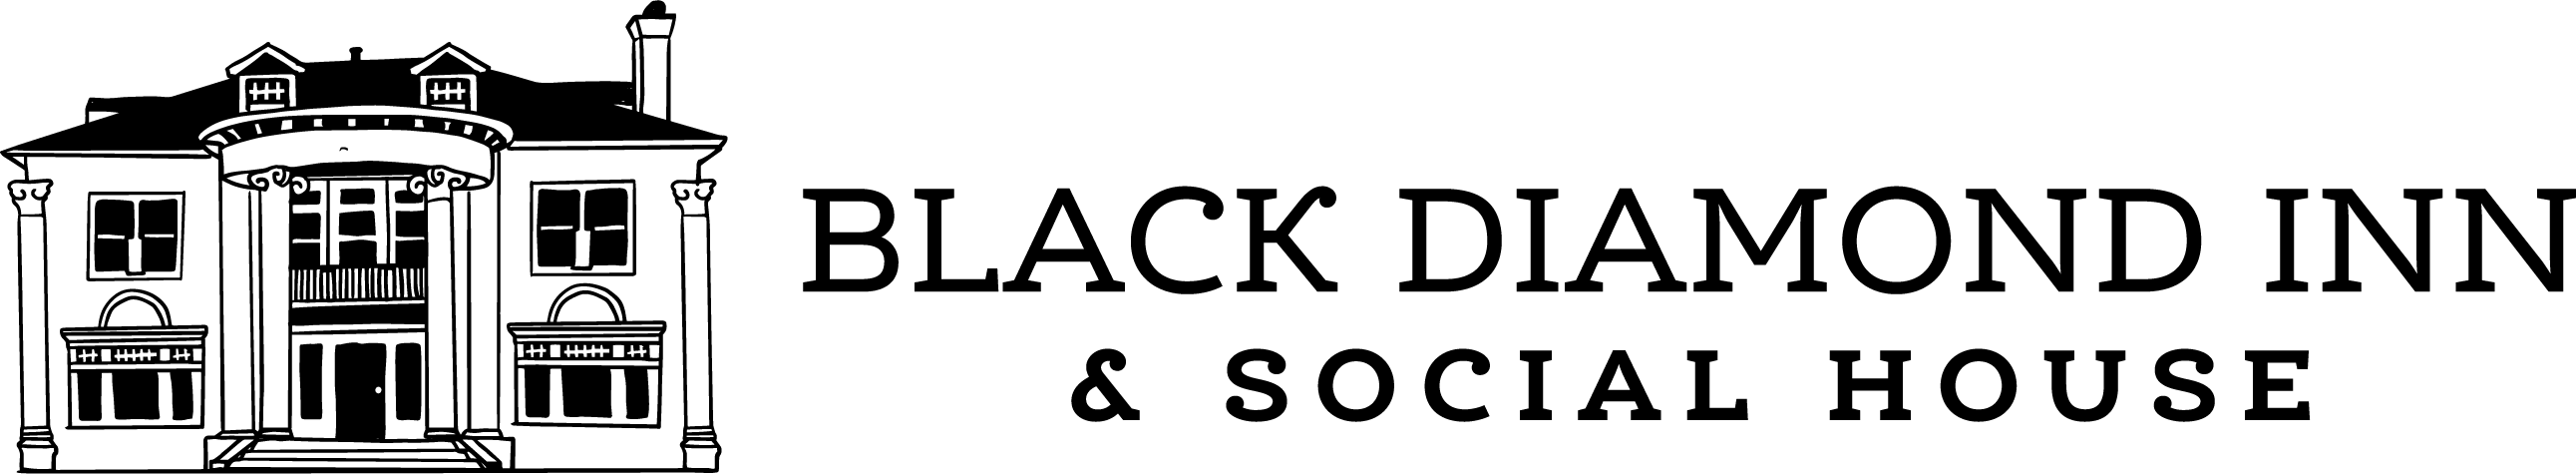 The Black Diamond Inn & Social House